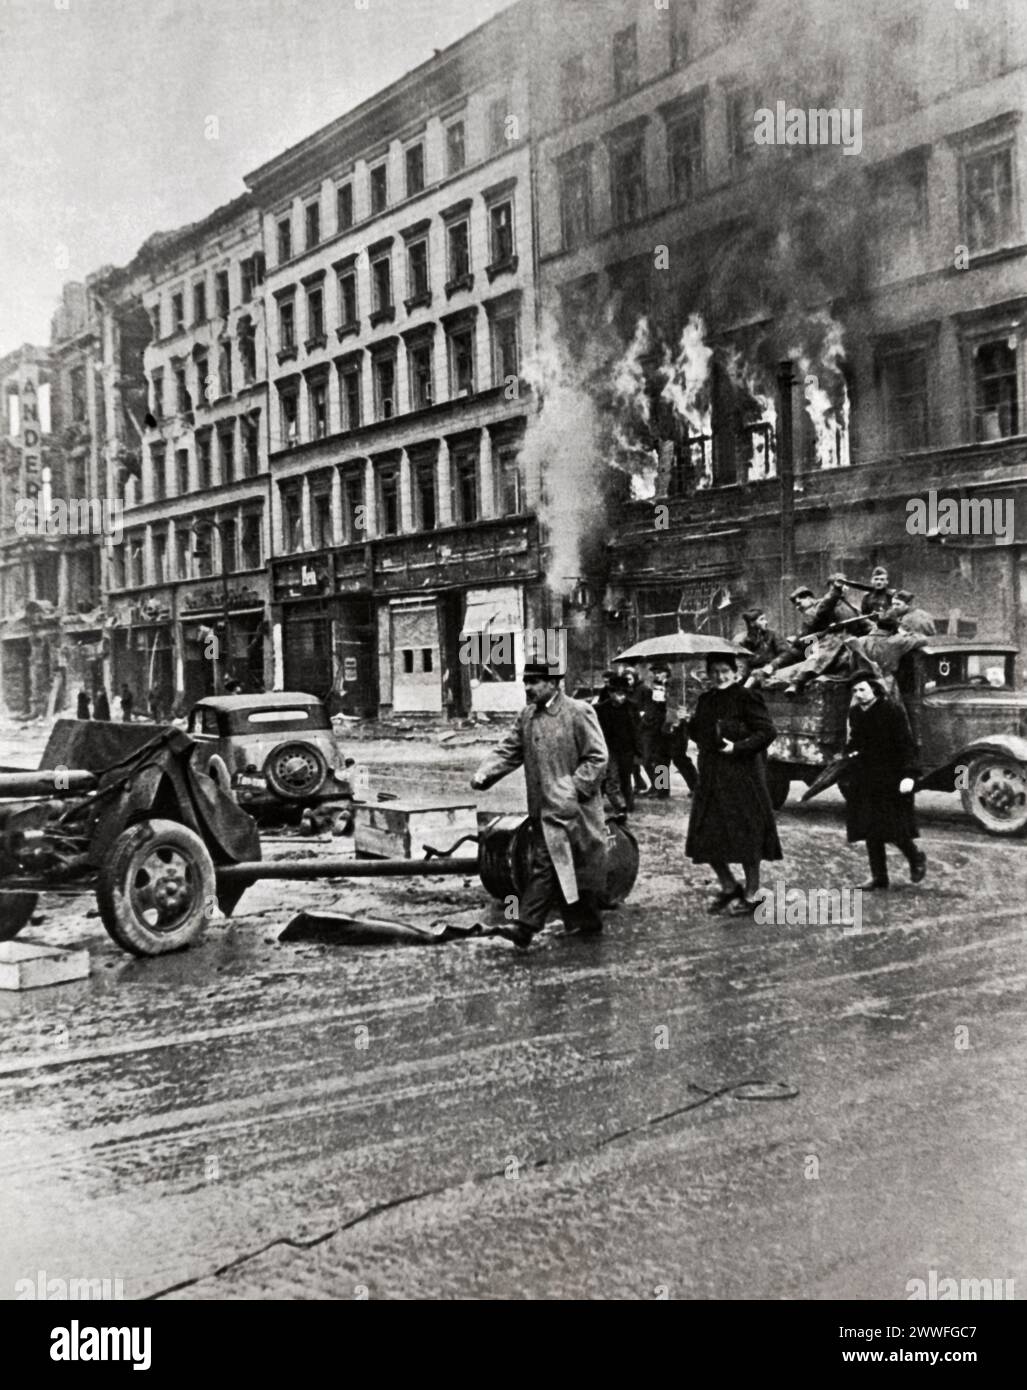 Berlino, Germania, 2 maggio 1945 fiamme scoppiarono da un edificio sullo sfondo mentre i soldati sovietici attraversavano Berlino sulla strada adiacente a Piazza Molen-Markt. Foto Stock